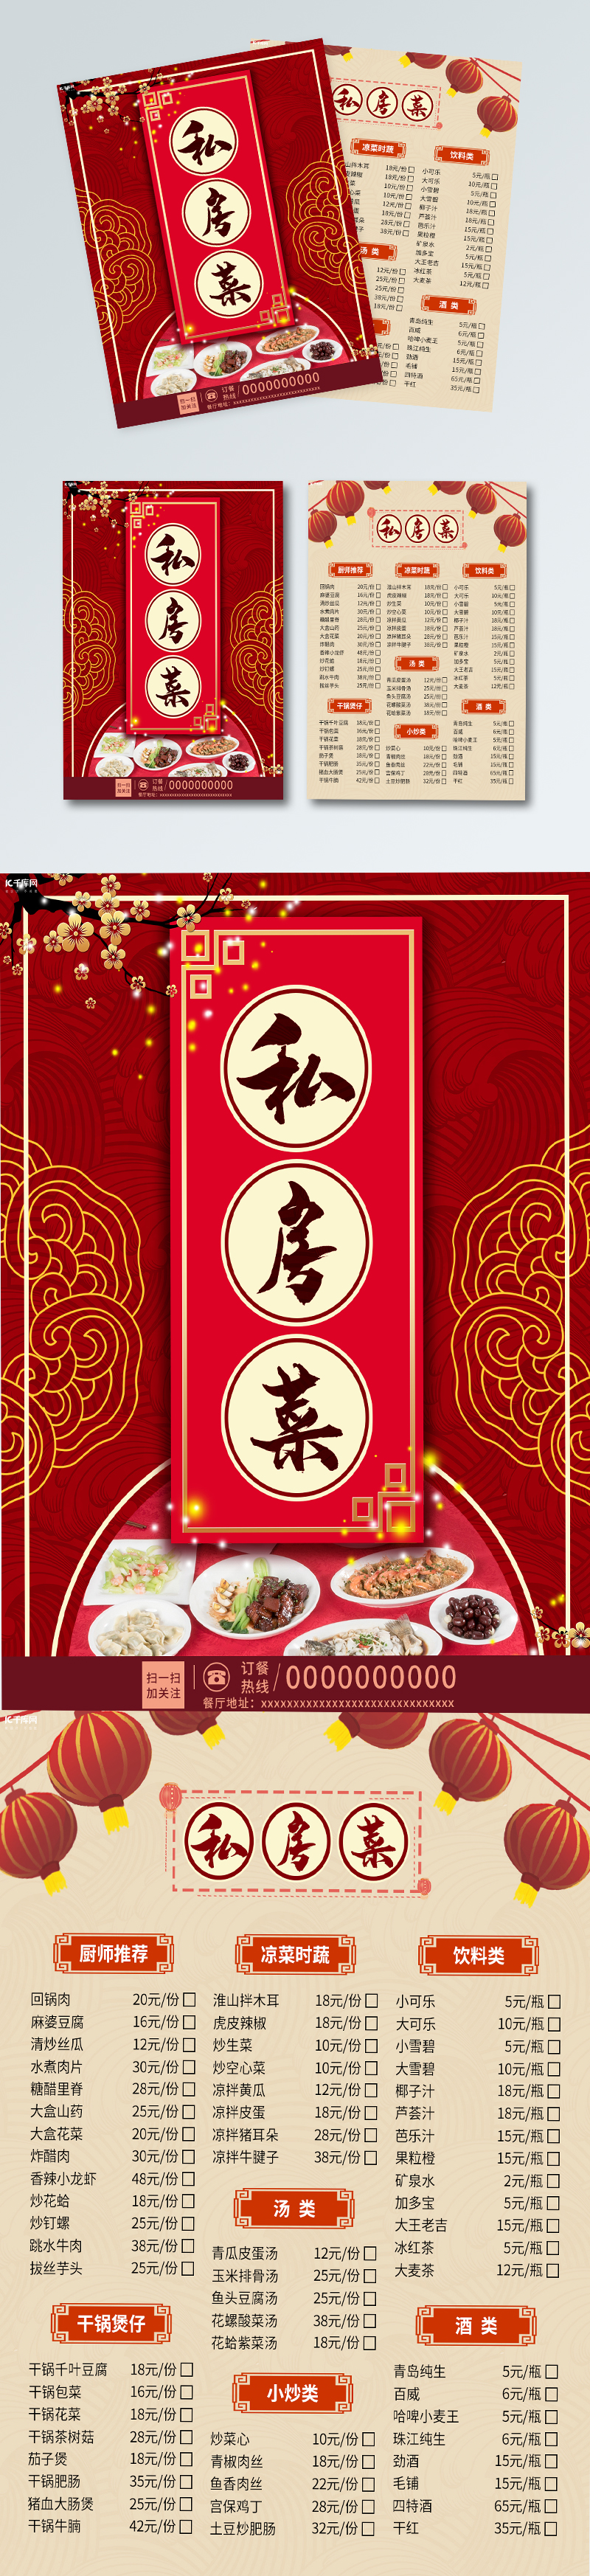 红色大气中国风雕花餐厅饭店私房菜订餐菜单宣传单图片